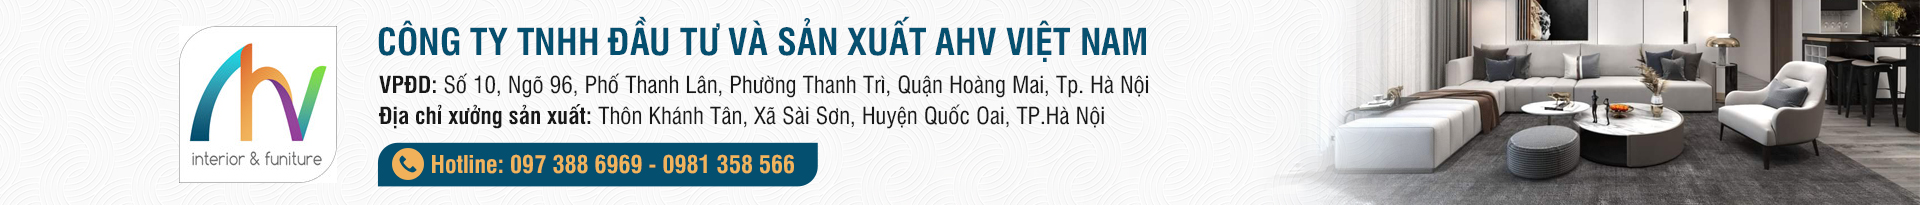 noithatahv.net | công ty đầu tư và sản xuất AHV Việt Nam